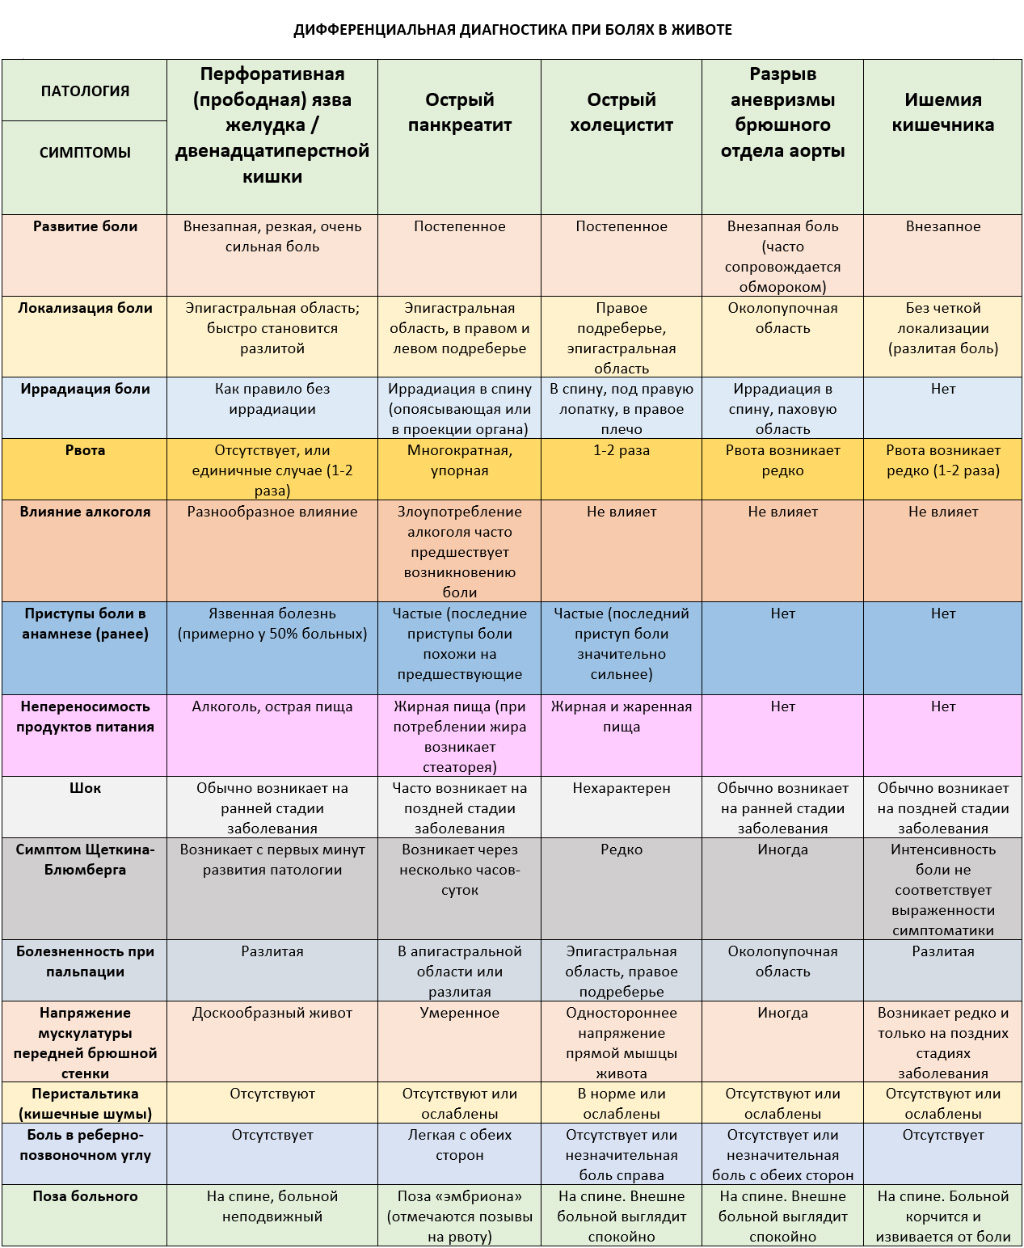 Таблица дифференциальной диагностики острого панкреатита